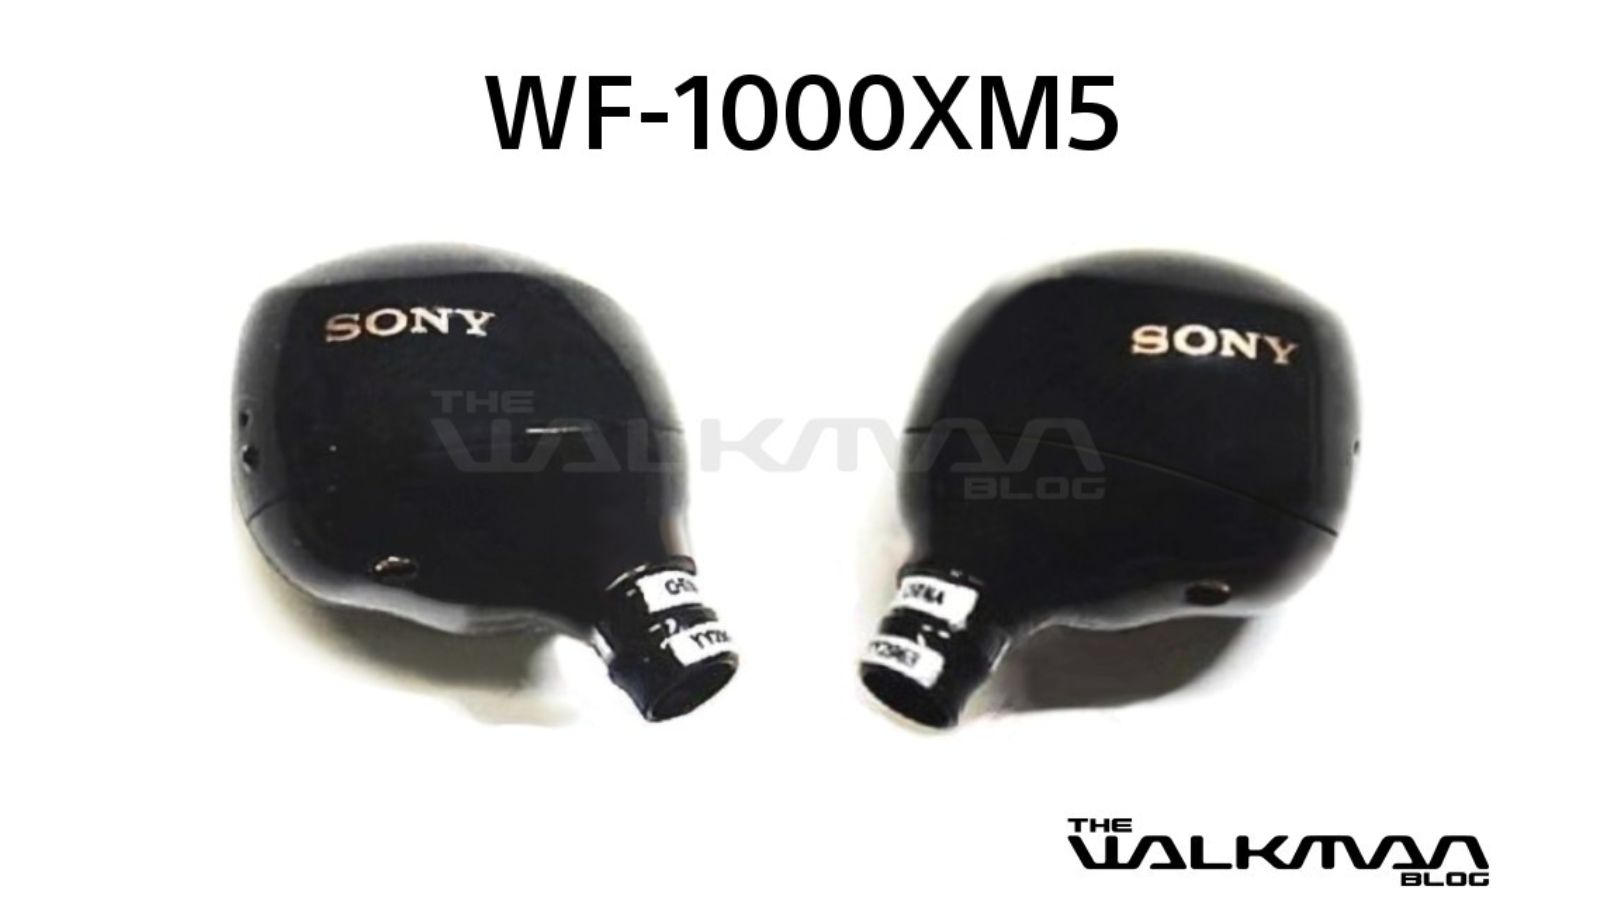 Sony WF-1000XM5 leaked